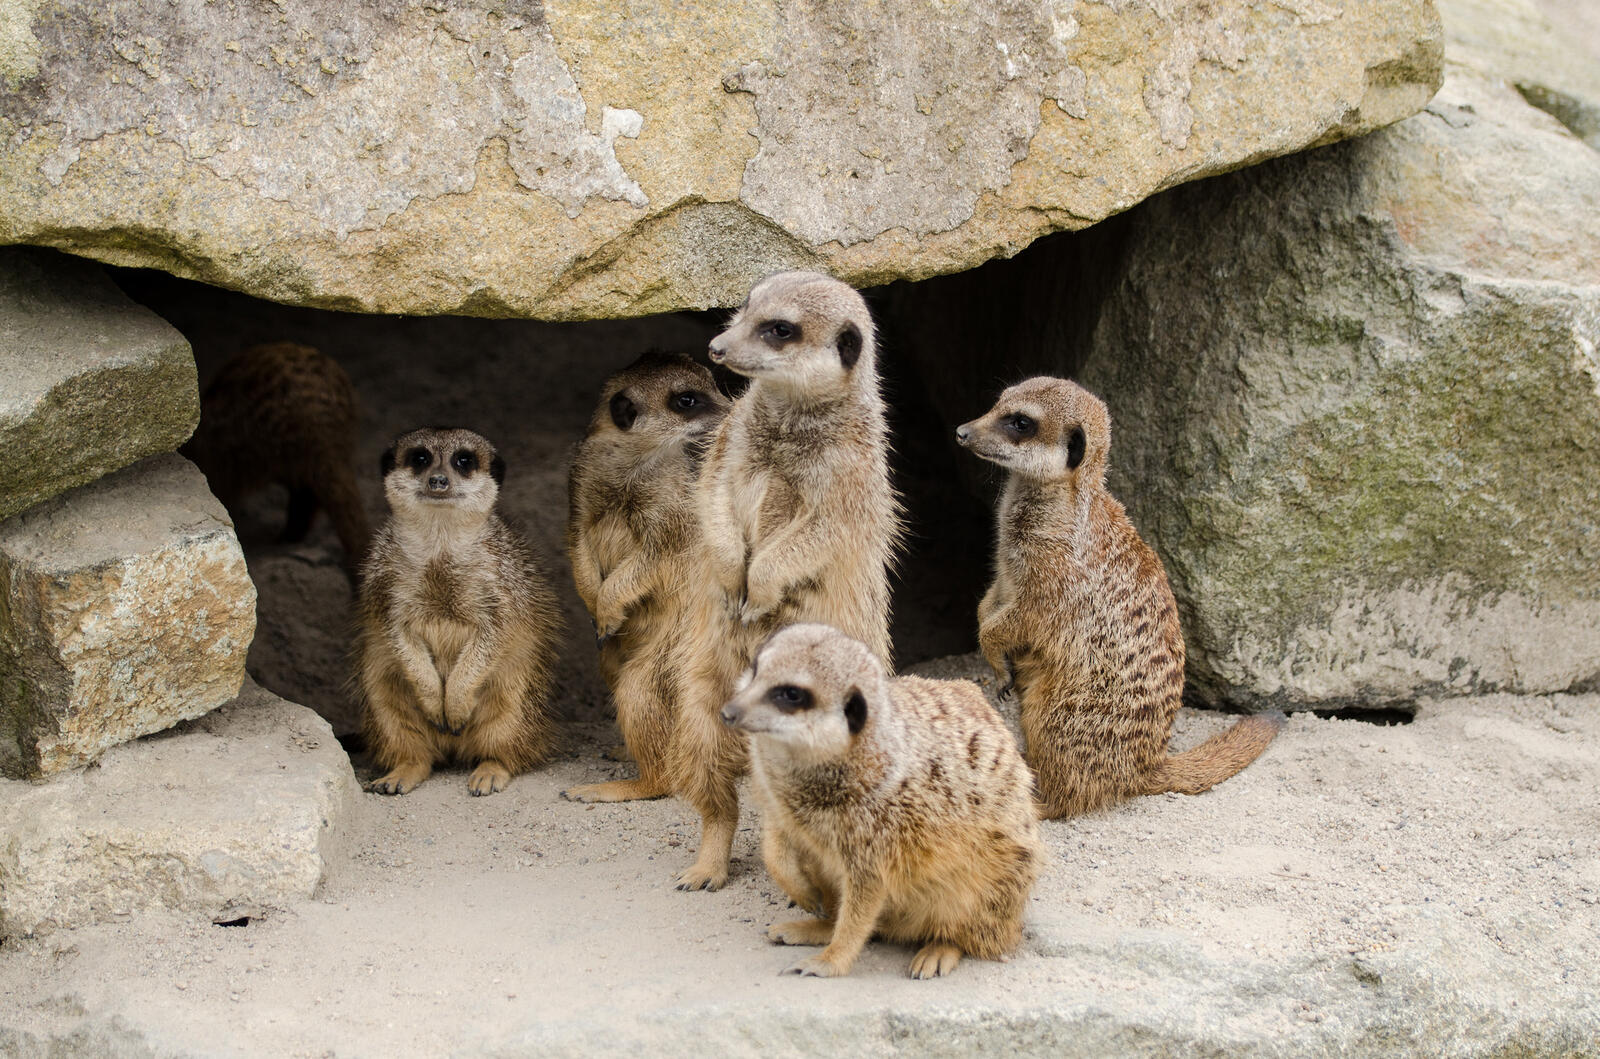 Free photo Download pictures of meerkats